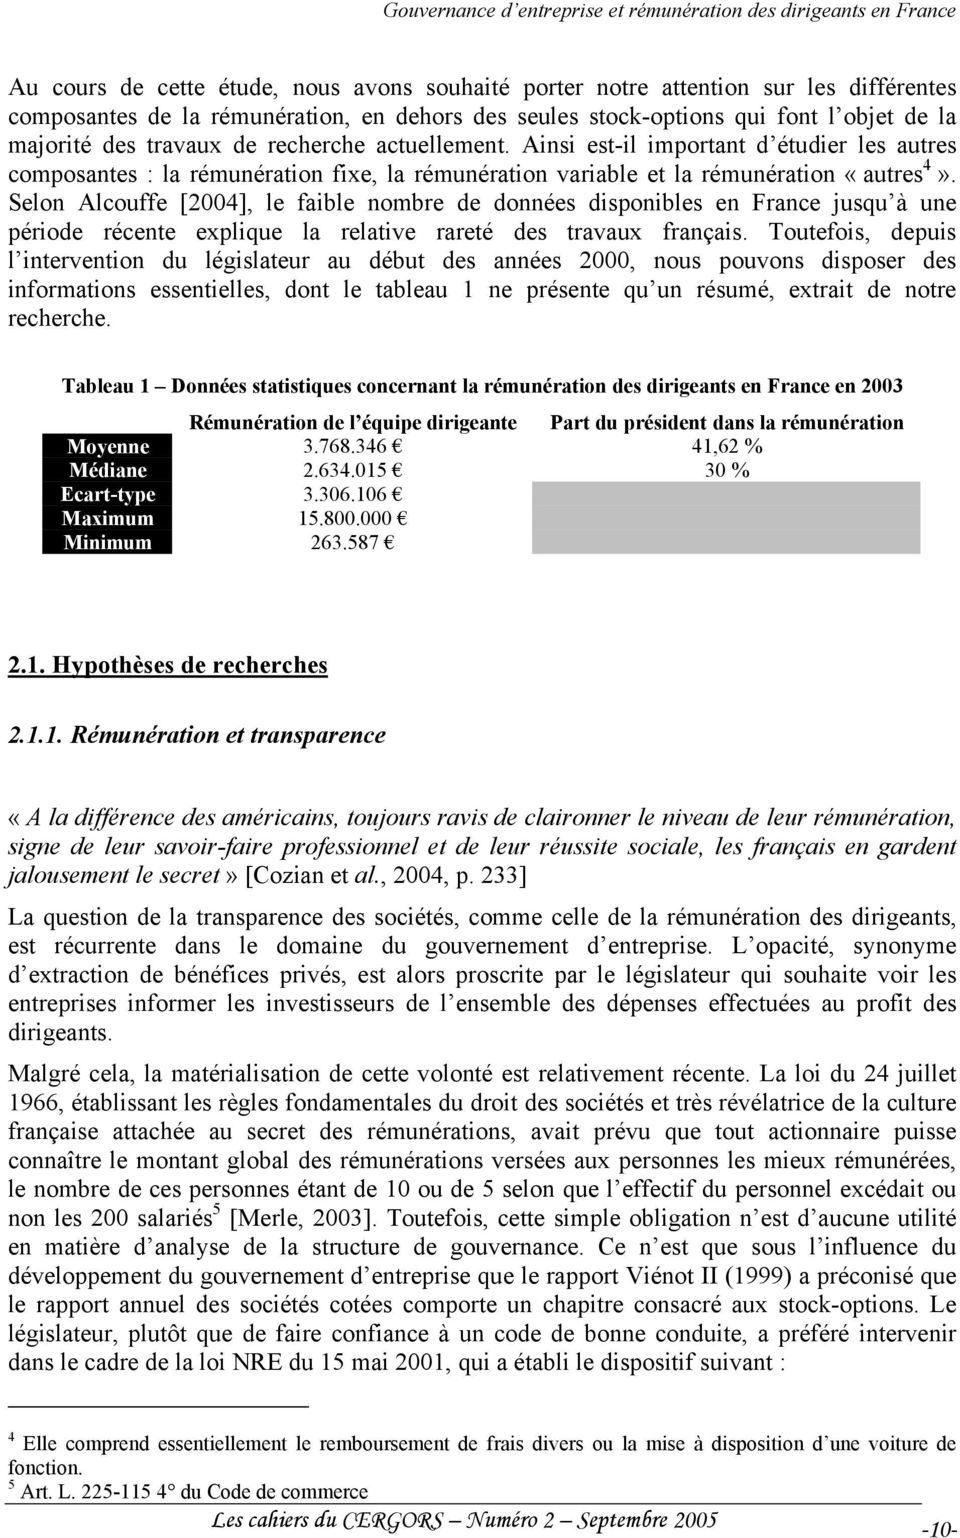 Selon Alcouffe [2004], le faible nombre de données disponibles en France jusqu à une période récente explique la relative rareté des travaux français.